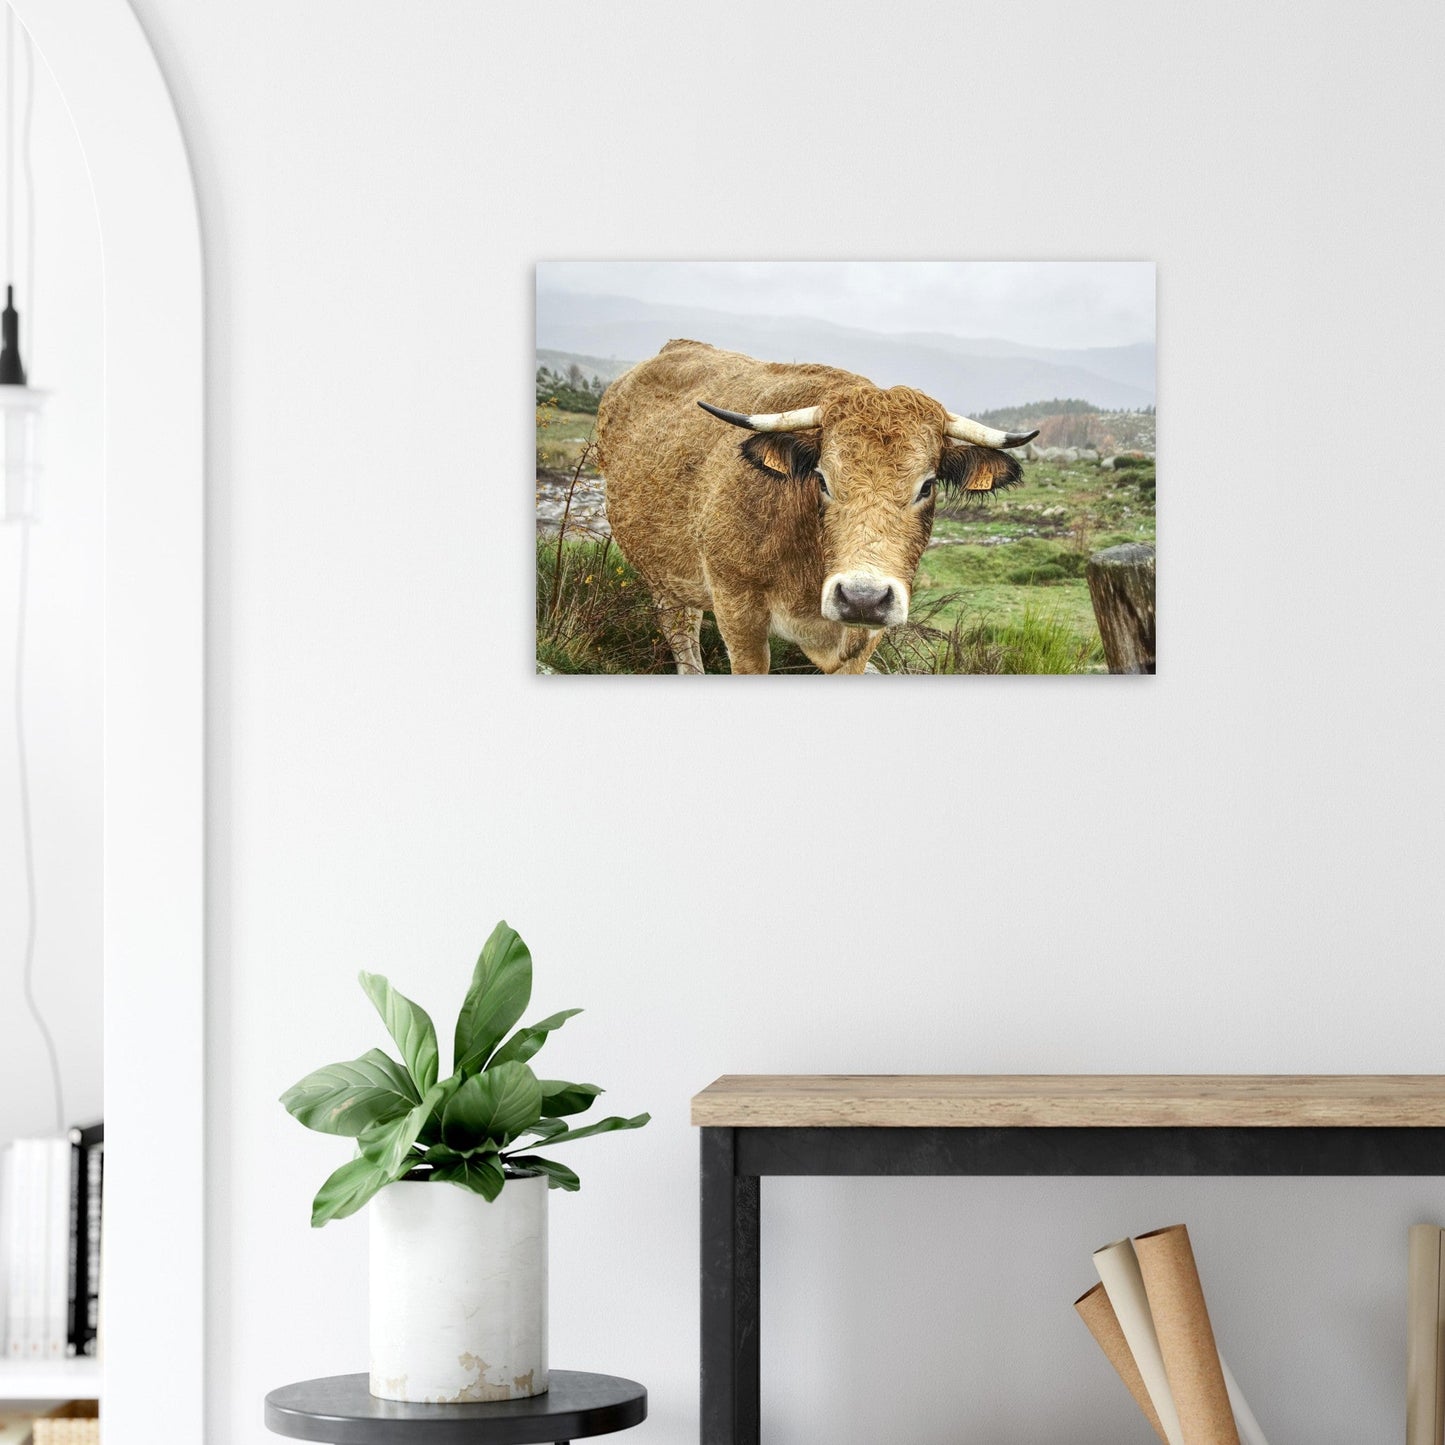 Vente Photo de vaches en Savoie #6 - Tableau photo paysage